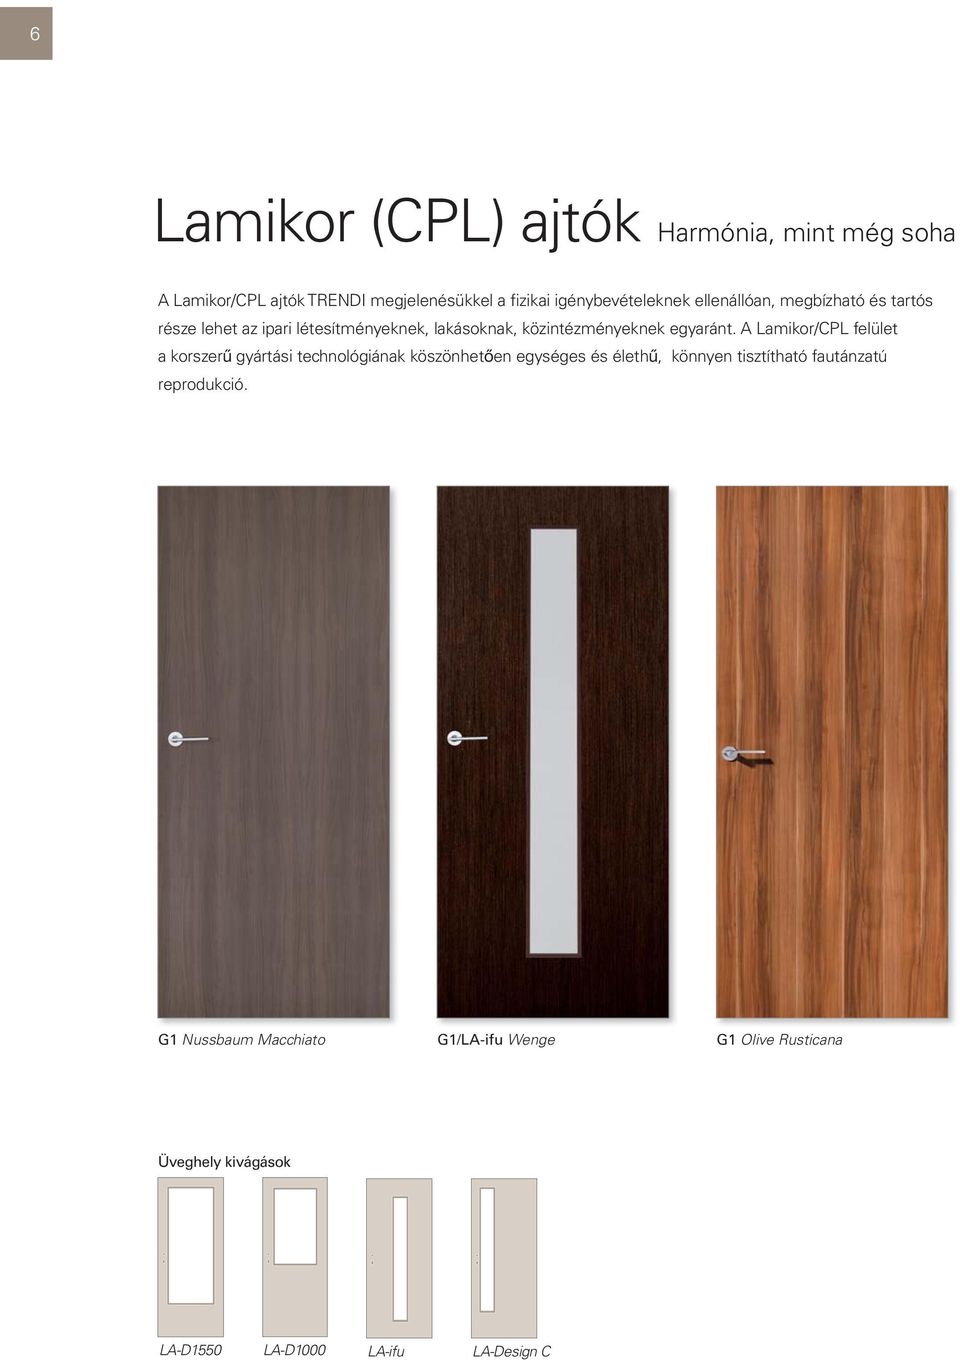 A Lamikor/CPL felület a korszerű gyártási technológiának köszönhetően egységes és élethű, könnyen tisztítható